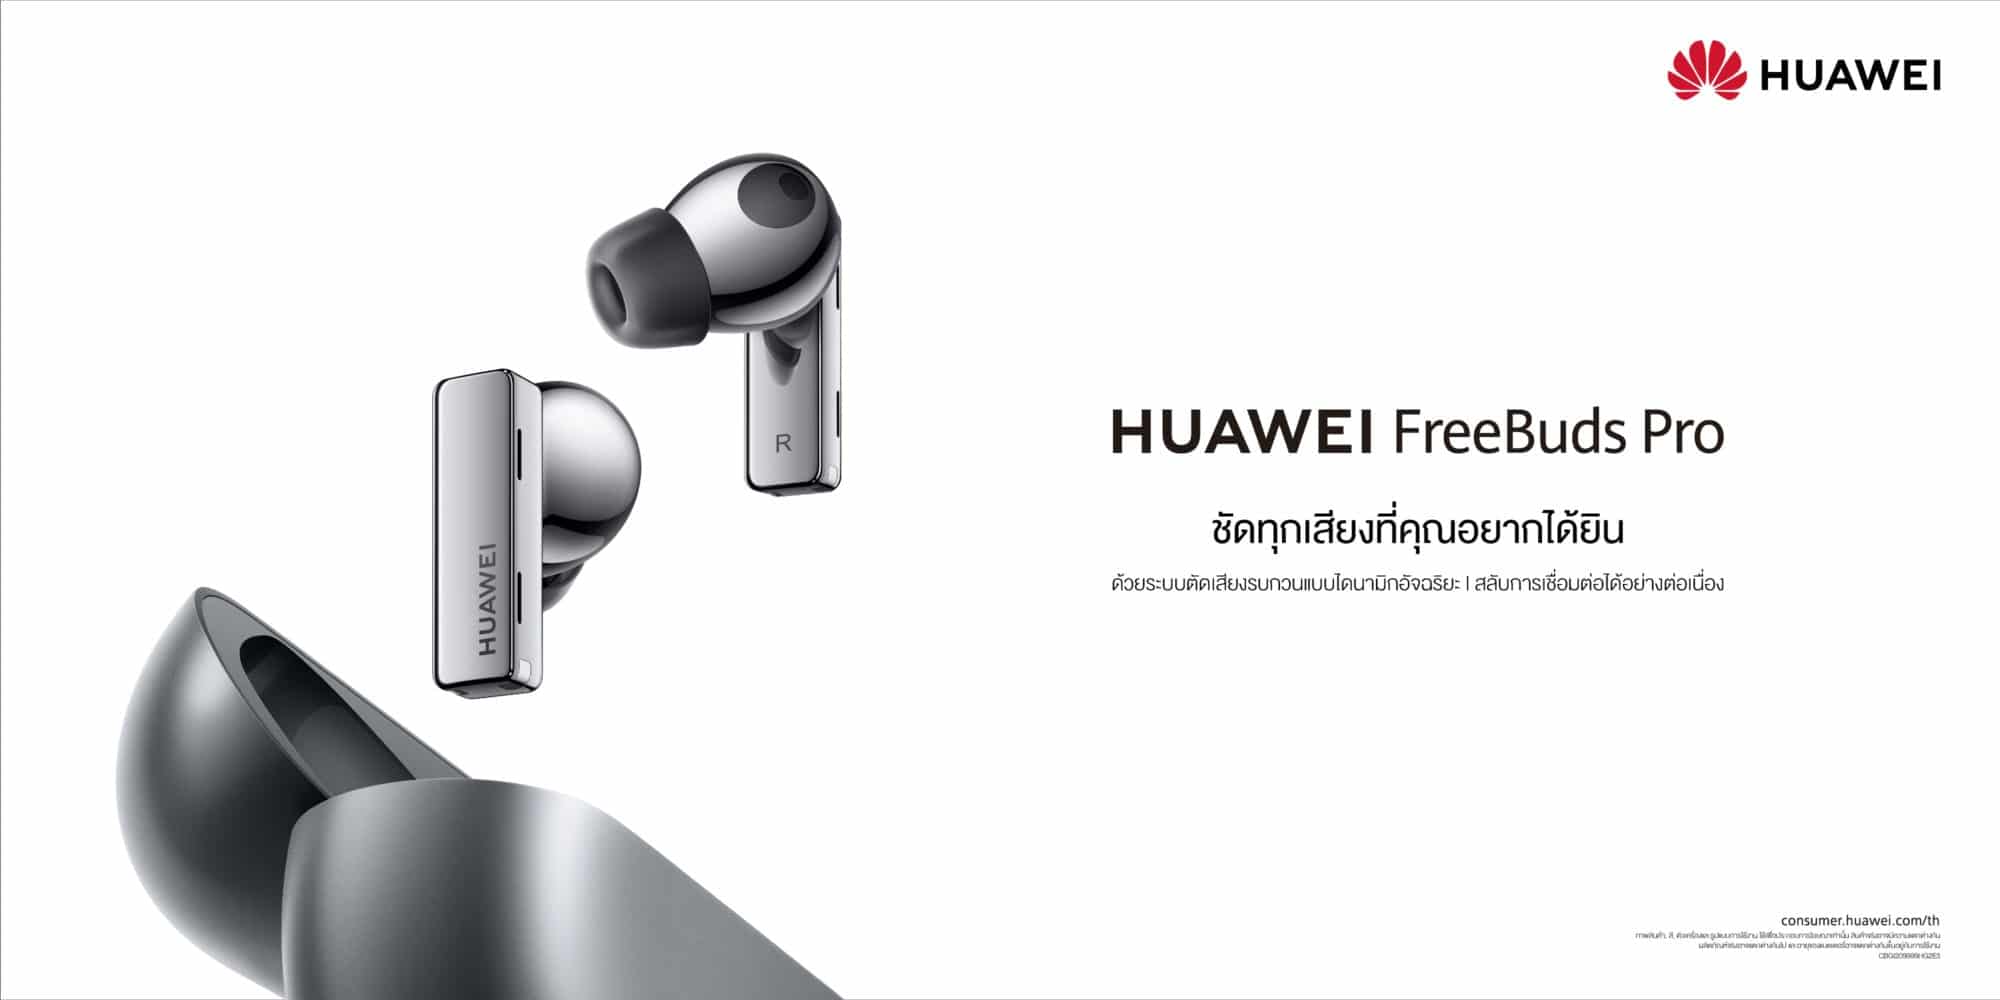 หัวเว่ยเปิดตัว HUAWEI FreeBuds Pro หูฟังไร้สาย TWS ที่สุดแห่งเทคโนโลยีตัดเสียงรบกวนพร้อมวางจำหน่ายและพรีออเดอร์ได้แล้วตั้งแต่วันนี้ – 5 พ.ย. นี้ 3